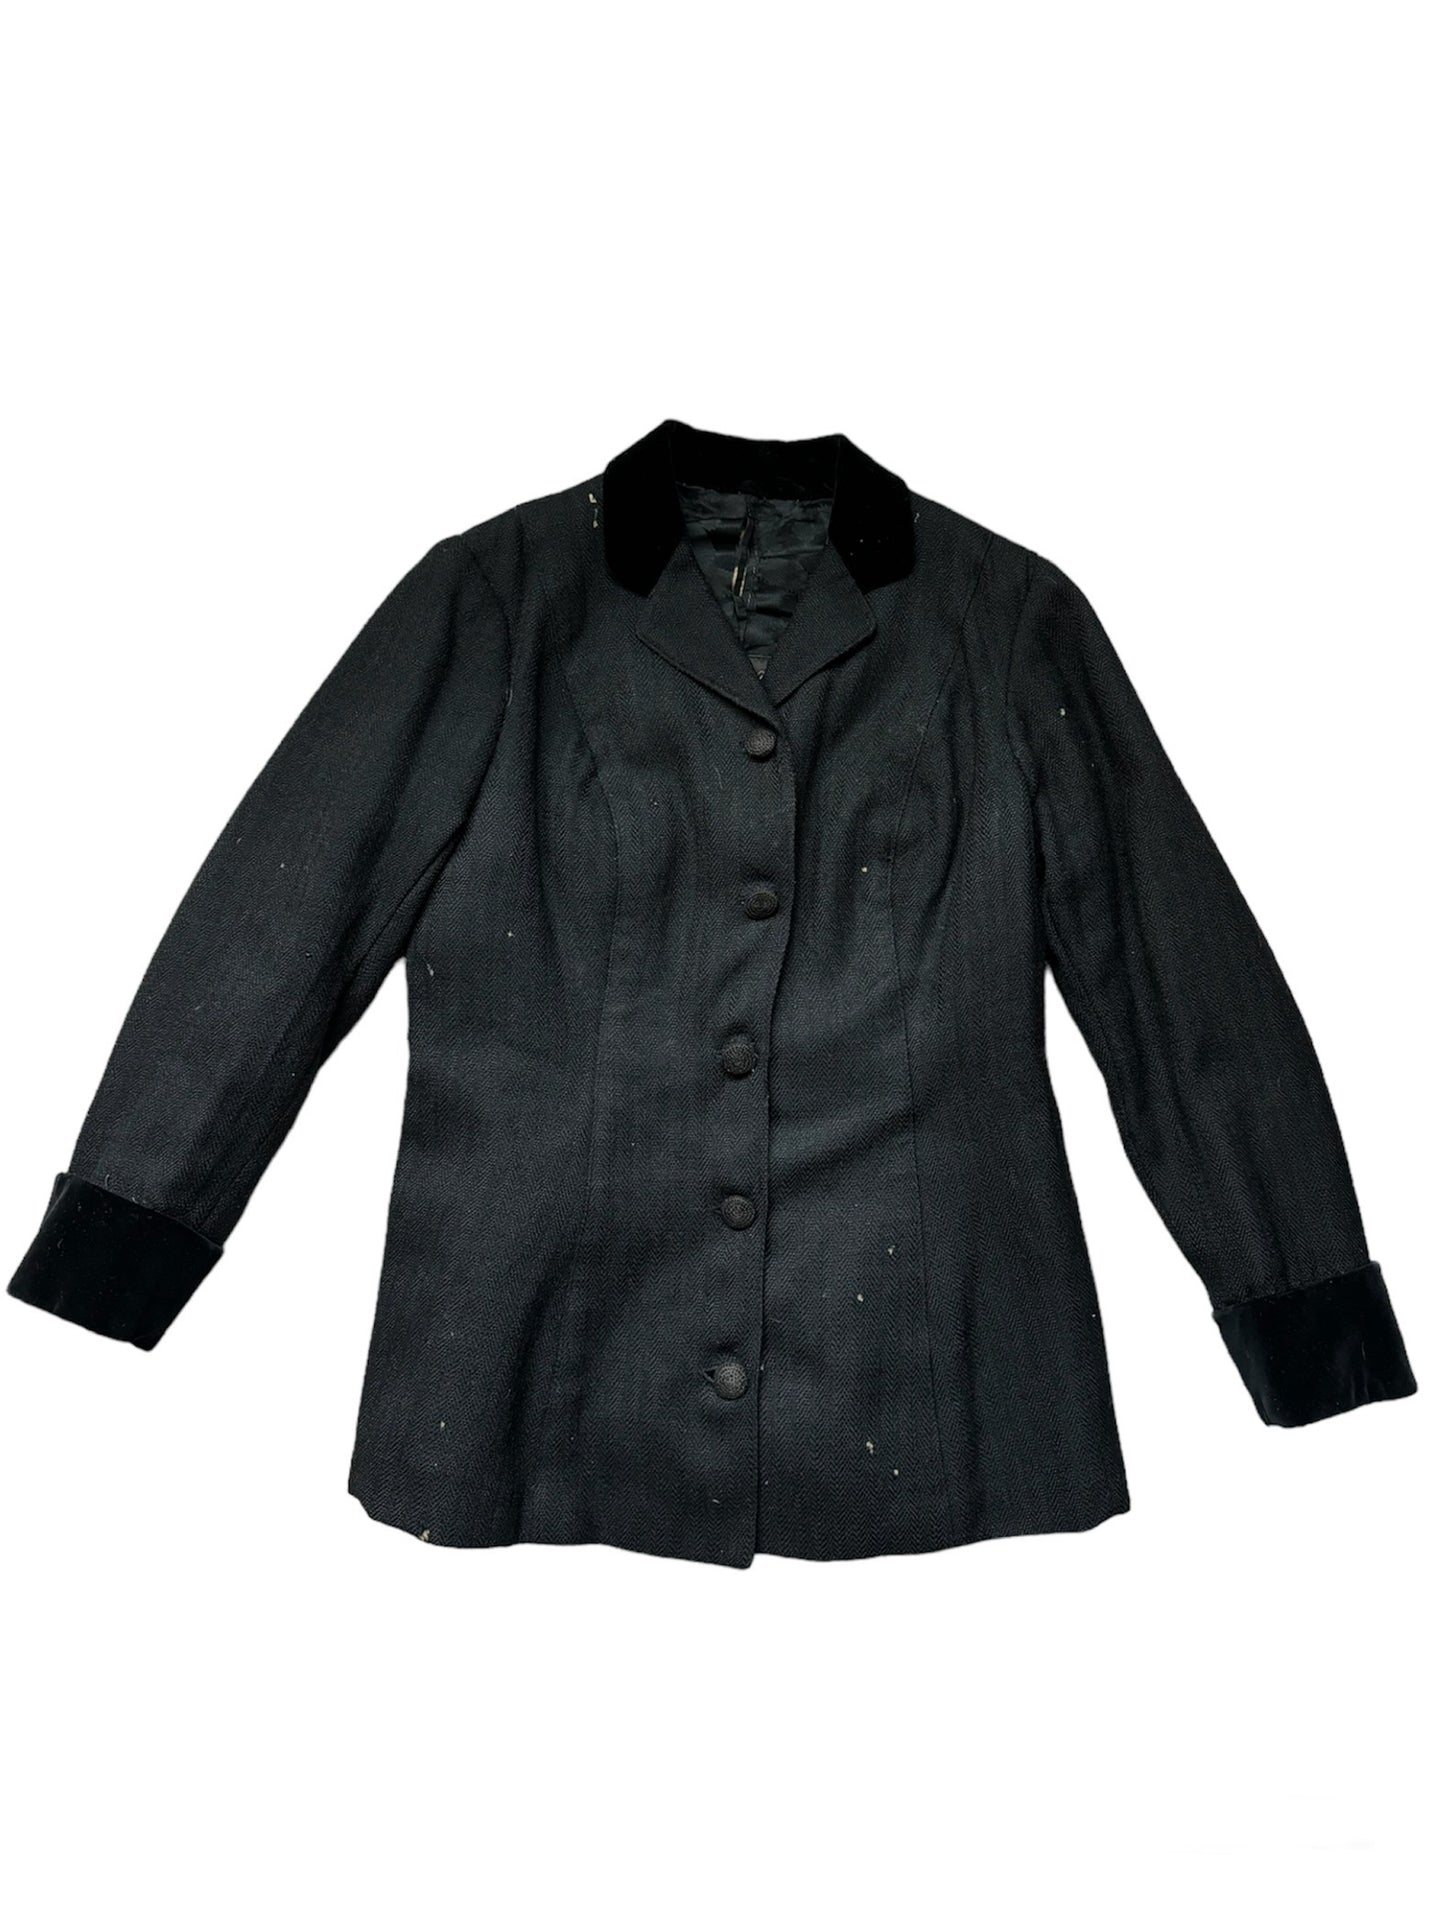 Edwardian Buttoned Jacket